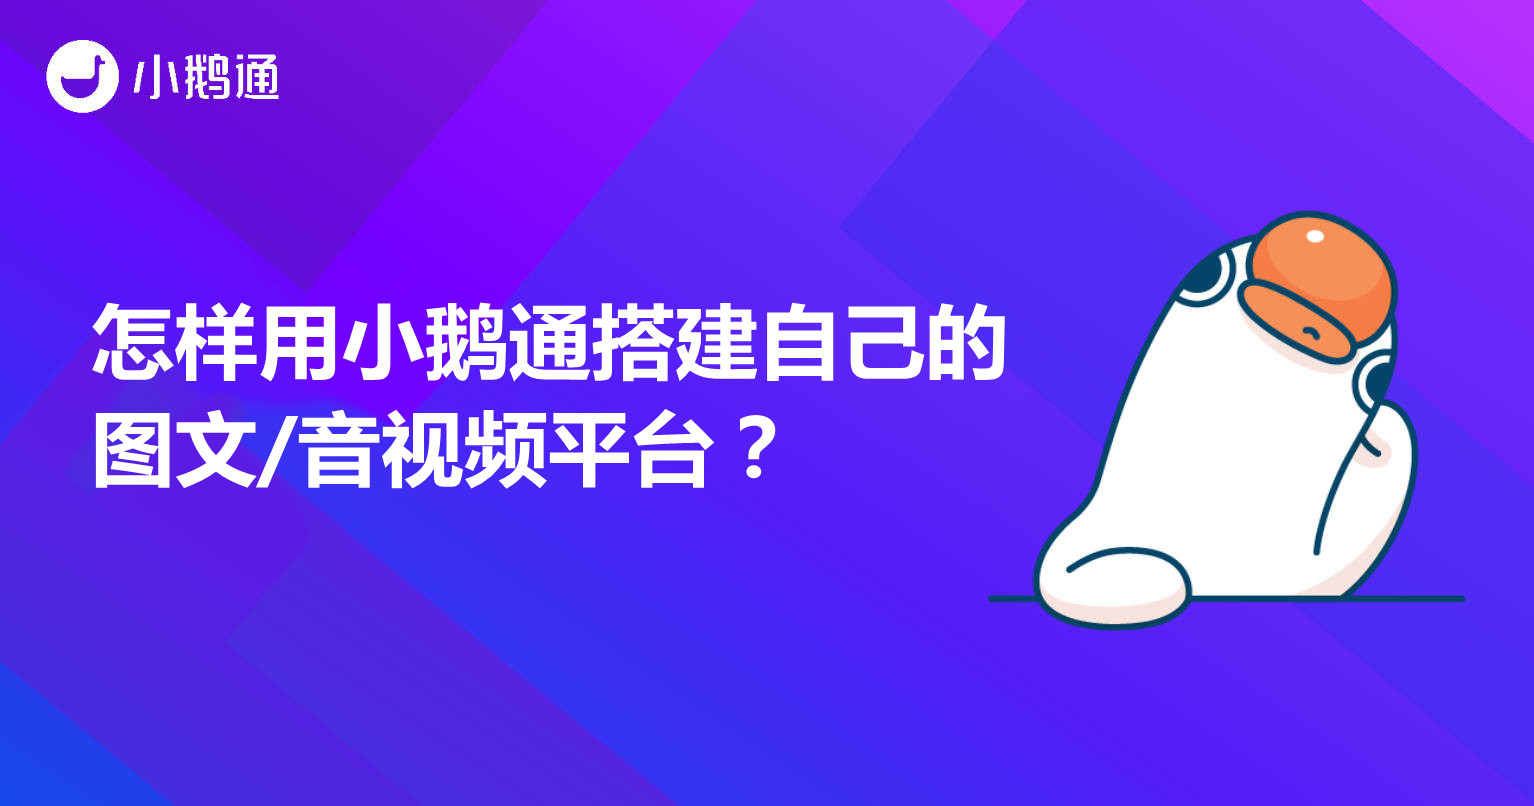 东胜怎样用小鹅通搭建自己的图文/音视频平台？